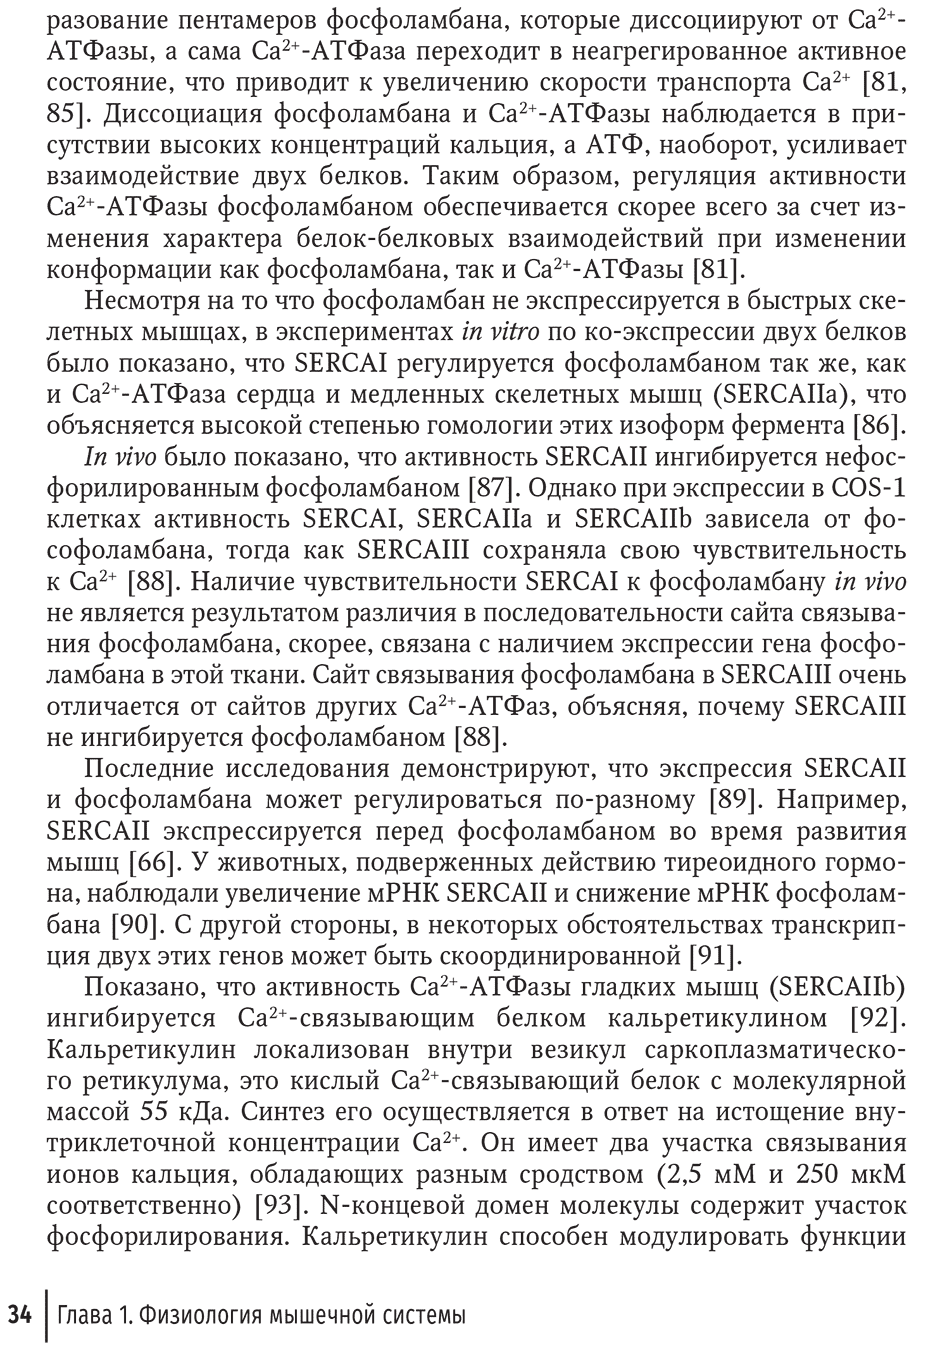 Пример страницы из книги "Миопатии в практике клинициста" - И. Н. Пасечника, С. А. Бернс, В. В. Бояринцева